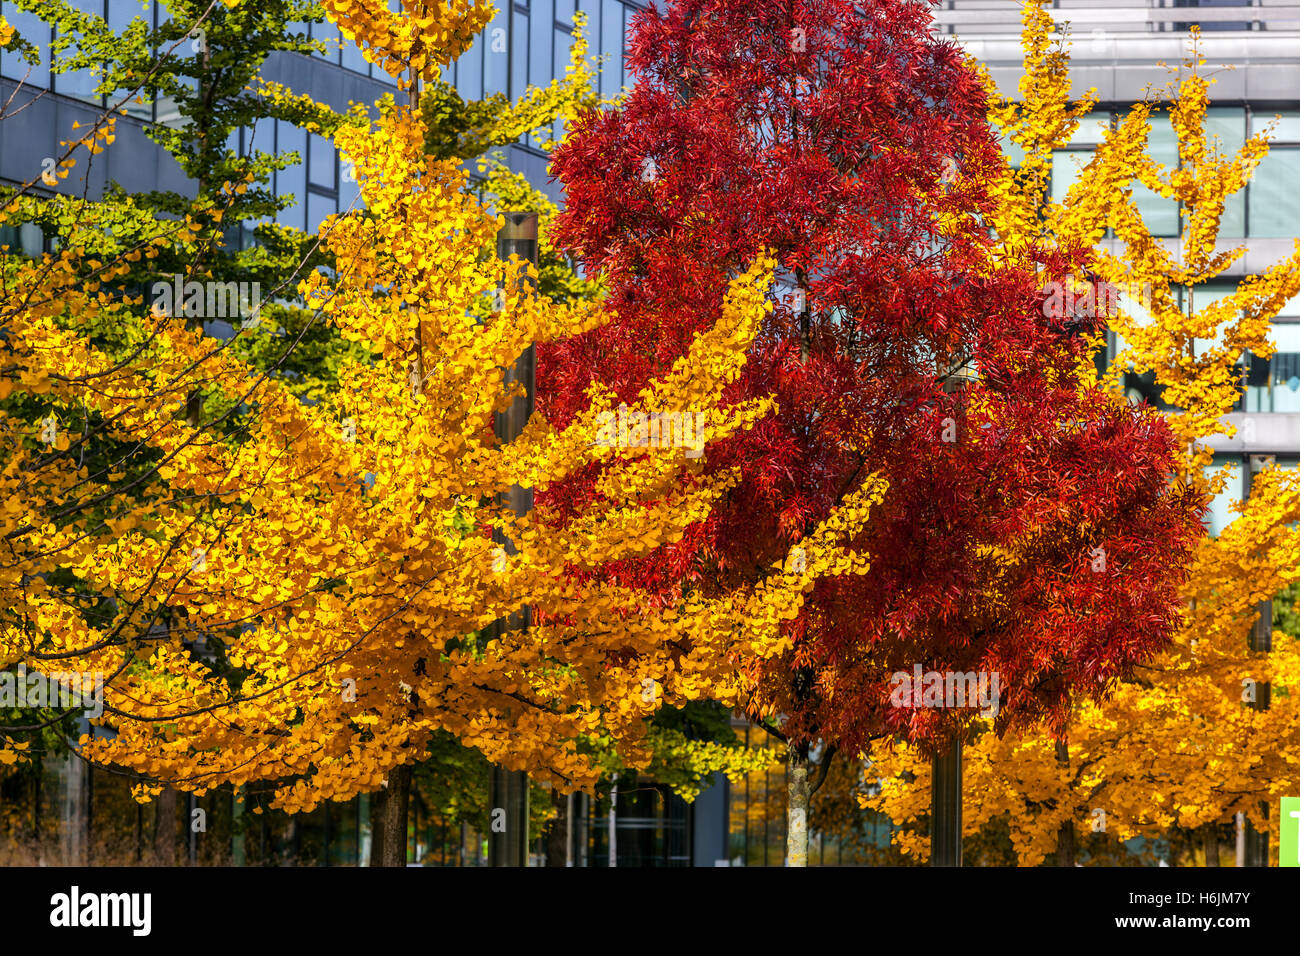 Herbst bunte Bäume, gemischte Blätter Urban City Gelb Ginkgo biloba Bäume Roter Ahornbaum Laubbäume Maidenhair Baum Ahornholz kontrastreiche Laubbäume Stockfoto